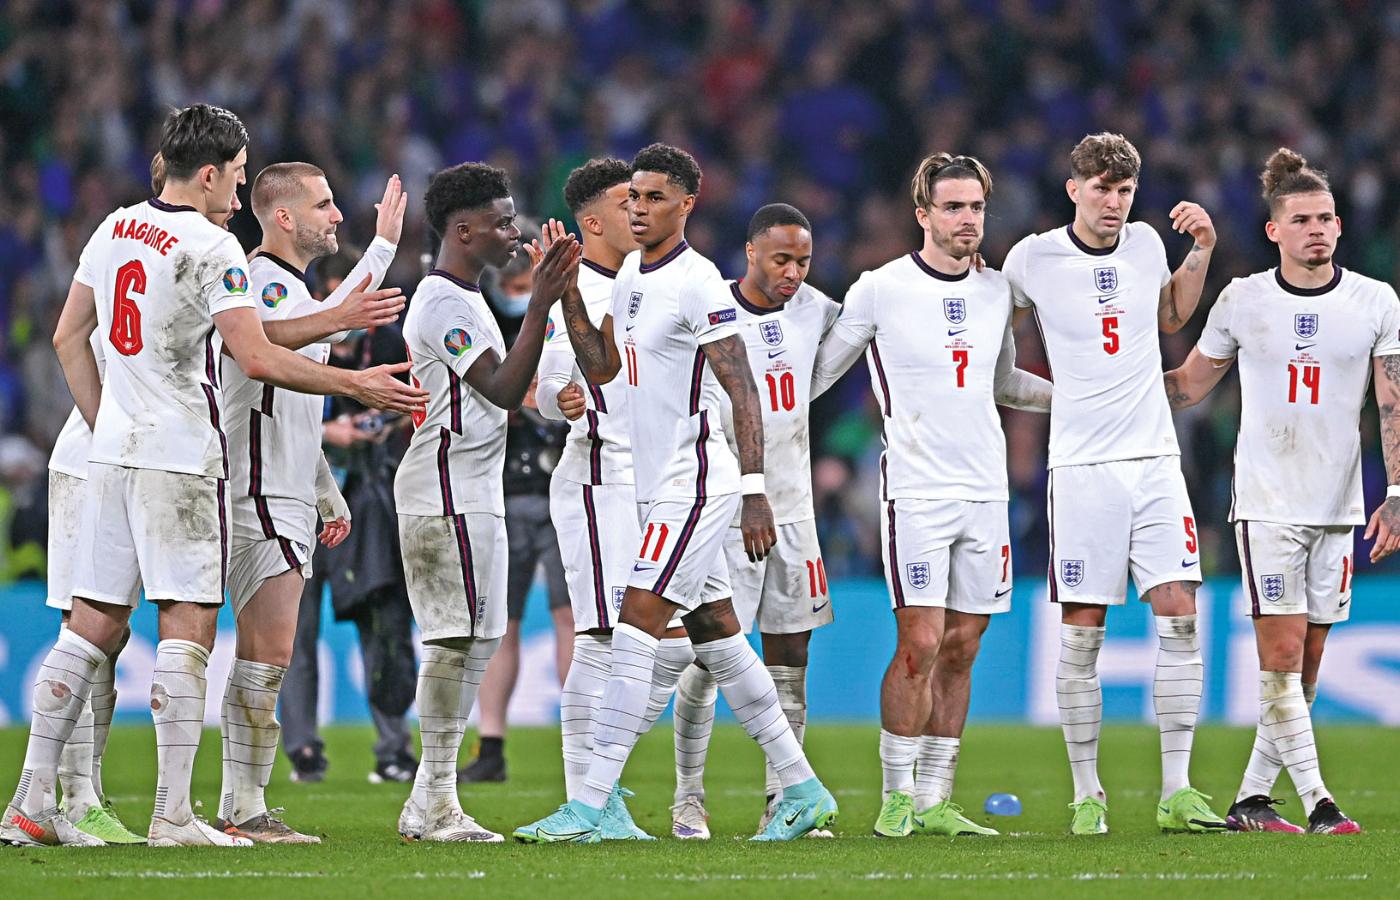 Angielska reprezentacja po finałowym meczu na Wembley. Zawodnicy stanęli murem za Marcusem Rashfordem, jednym z niefortunnych strzelców w rzutach karnych.